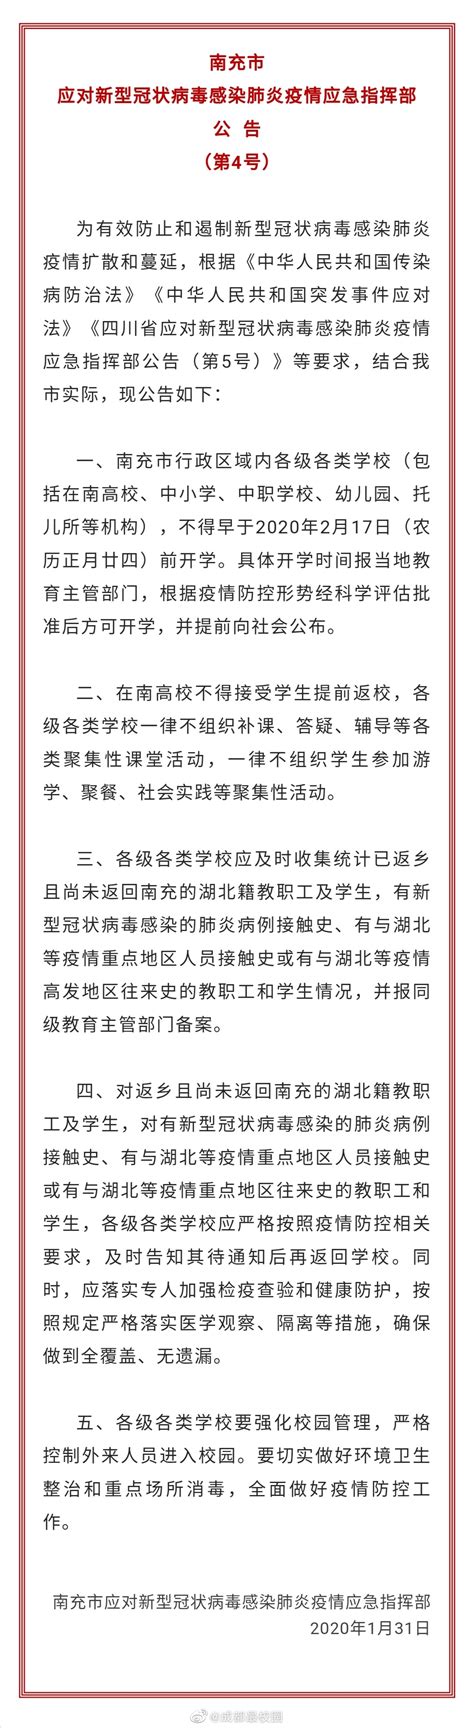 抗击新型冠状病毒肺炎疫情 南充盟员在行动(四)--中国民主同盟四川省委员会